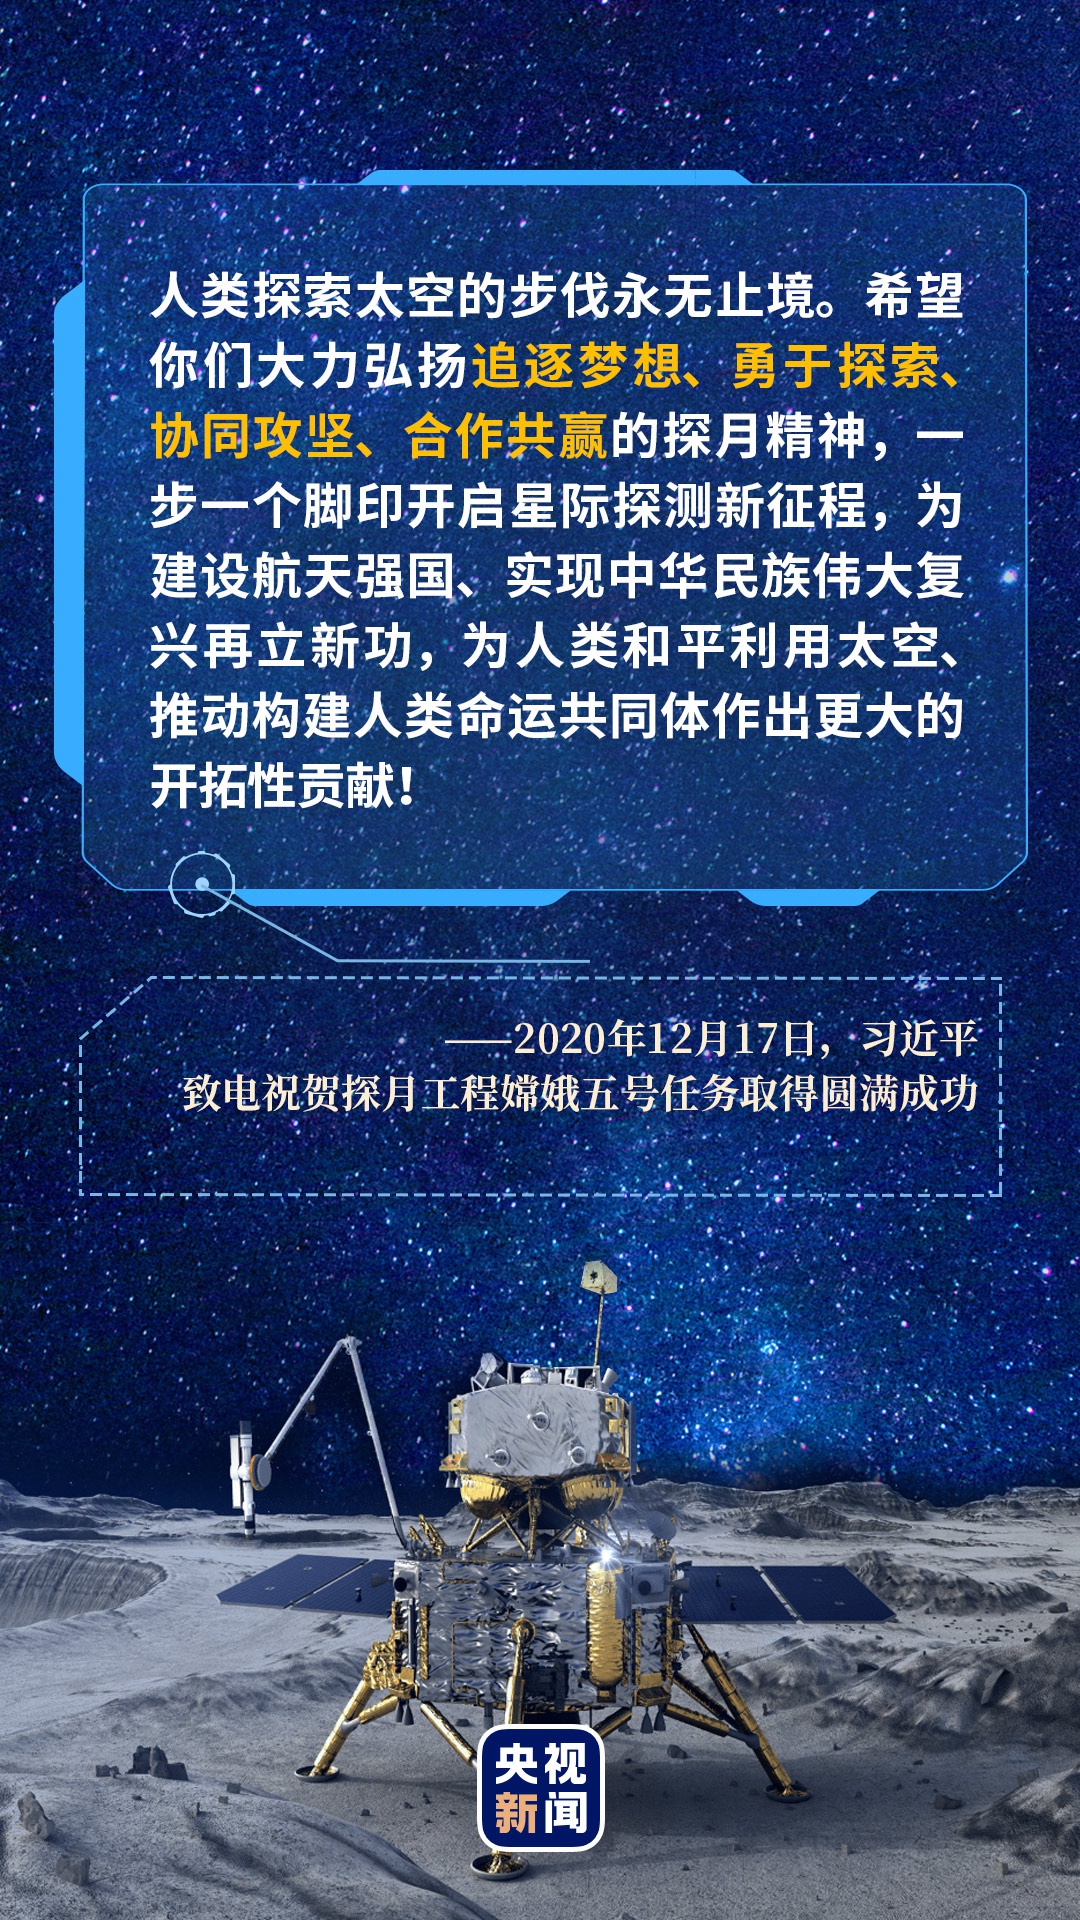 平稳降落！嫦娥五号成功落月 开展月面工作_天维新闻频道 - Skykiwi.com